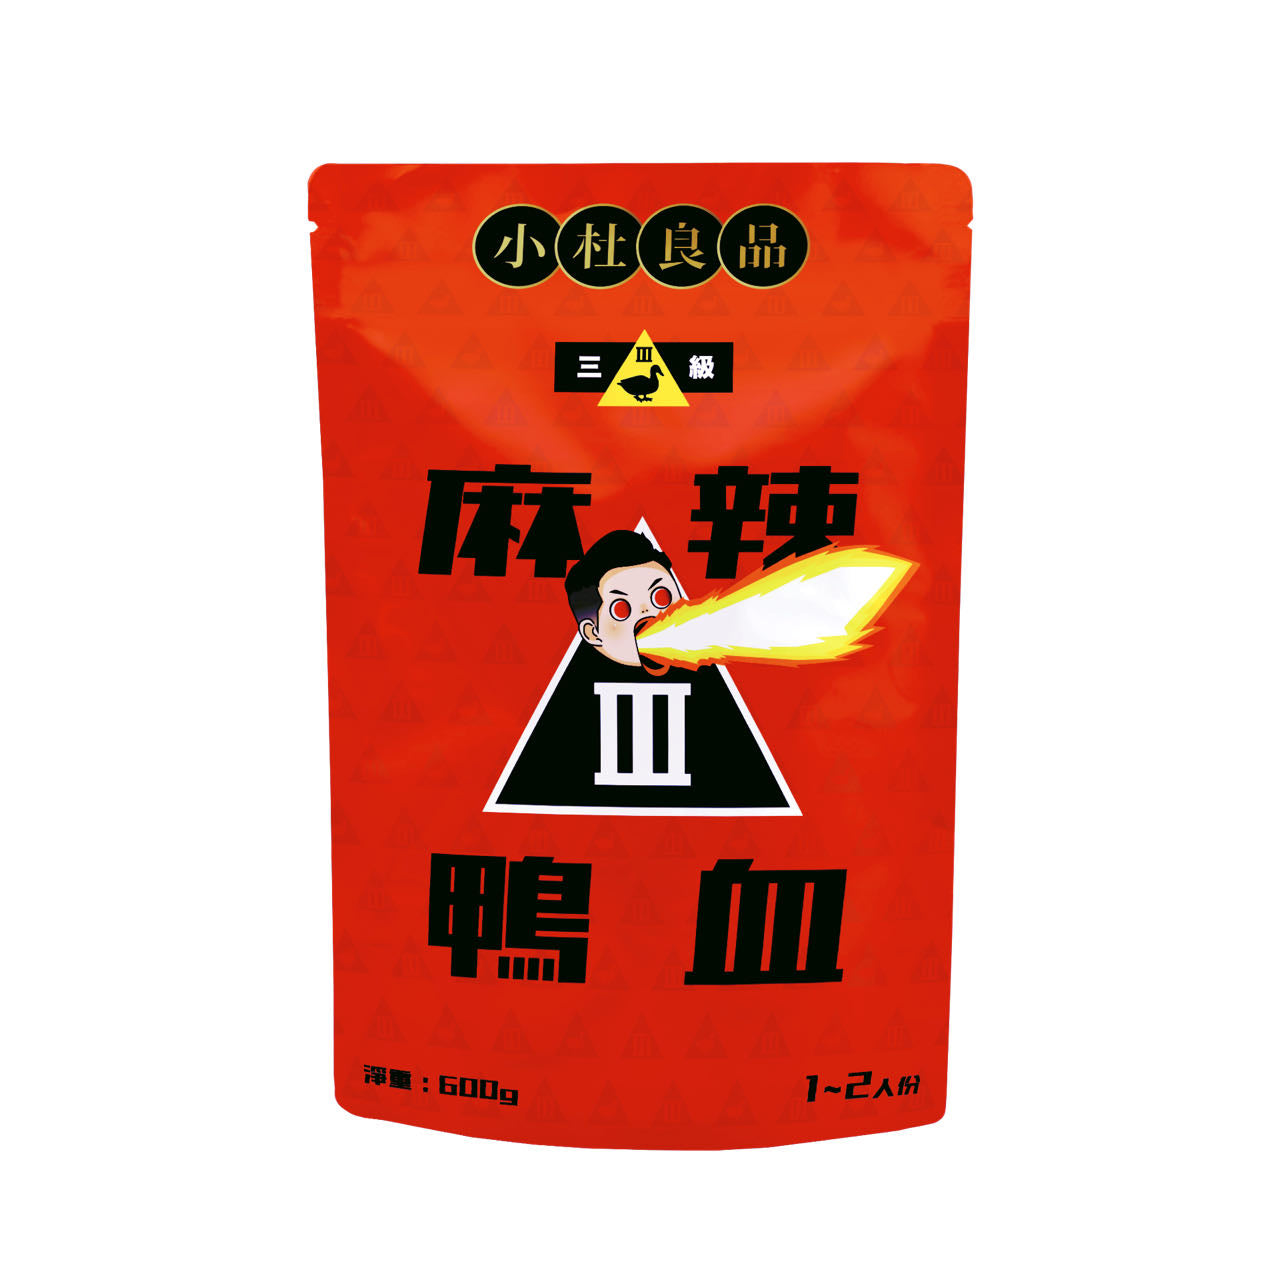 小杜良品 - 花椒之味拌麵/一級麻辣鴨血/三級麻辣鴨血 套裝 Fragrance Stir Noodles (115g*4pack) / Spicy Duck Blood (Level 1) / Spicy Duck Blood (Level 3) Package